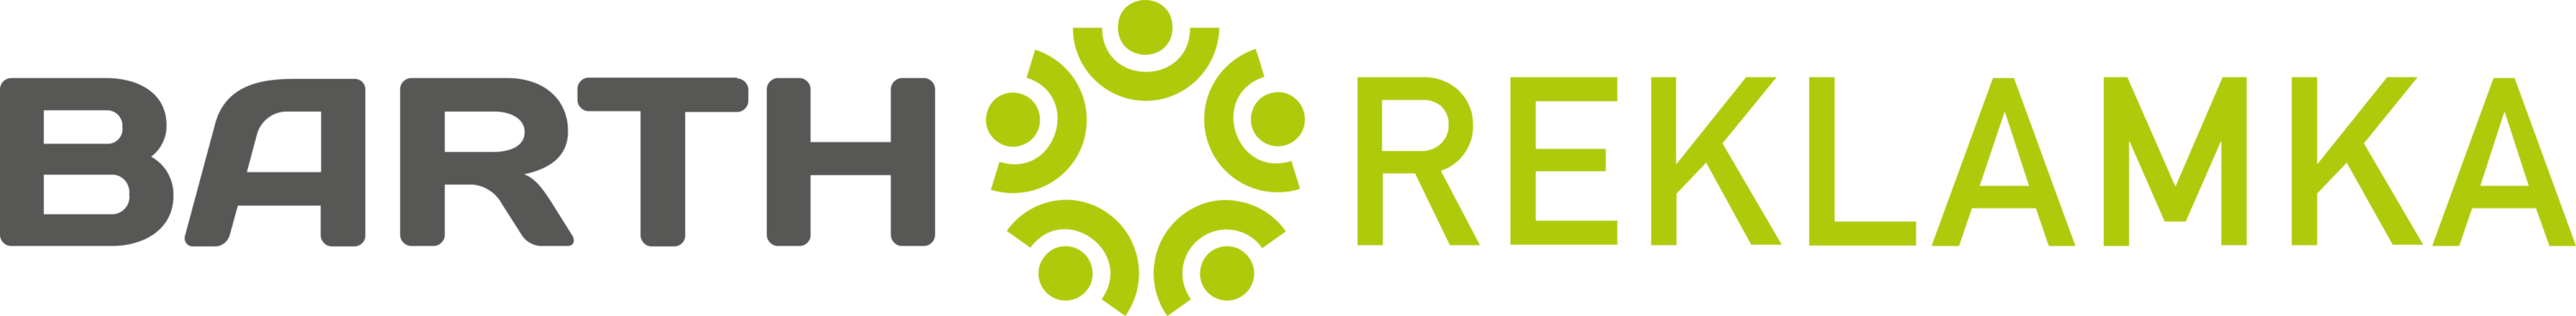 Barth Reklamka Logo